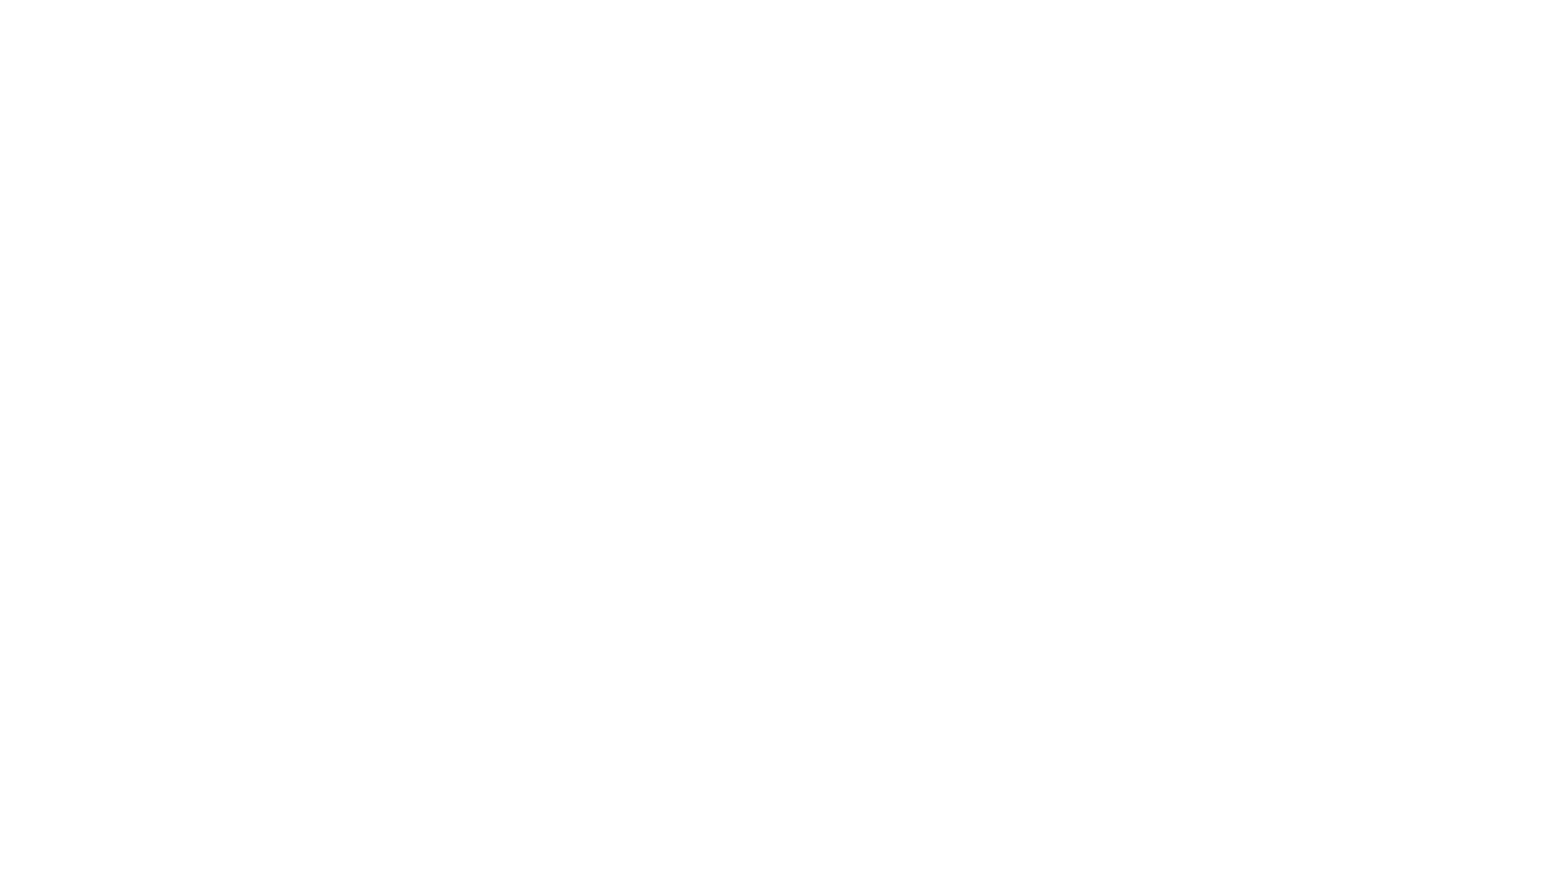 Hilltop Holdings logo for dark backgrounds (transparent PNG)